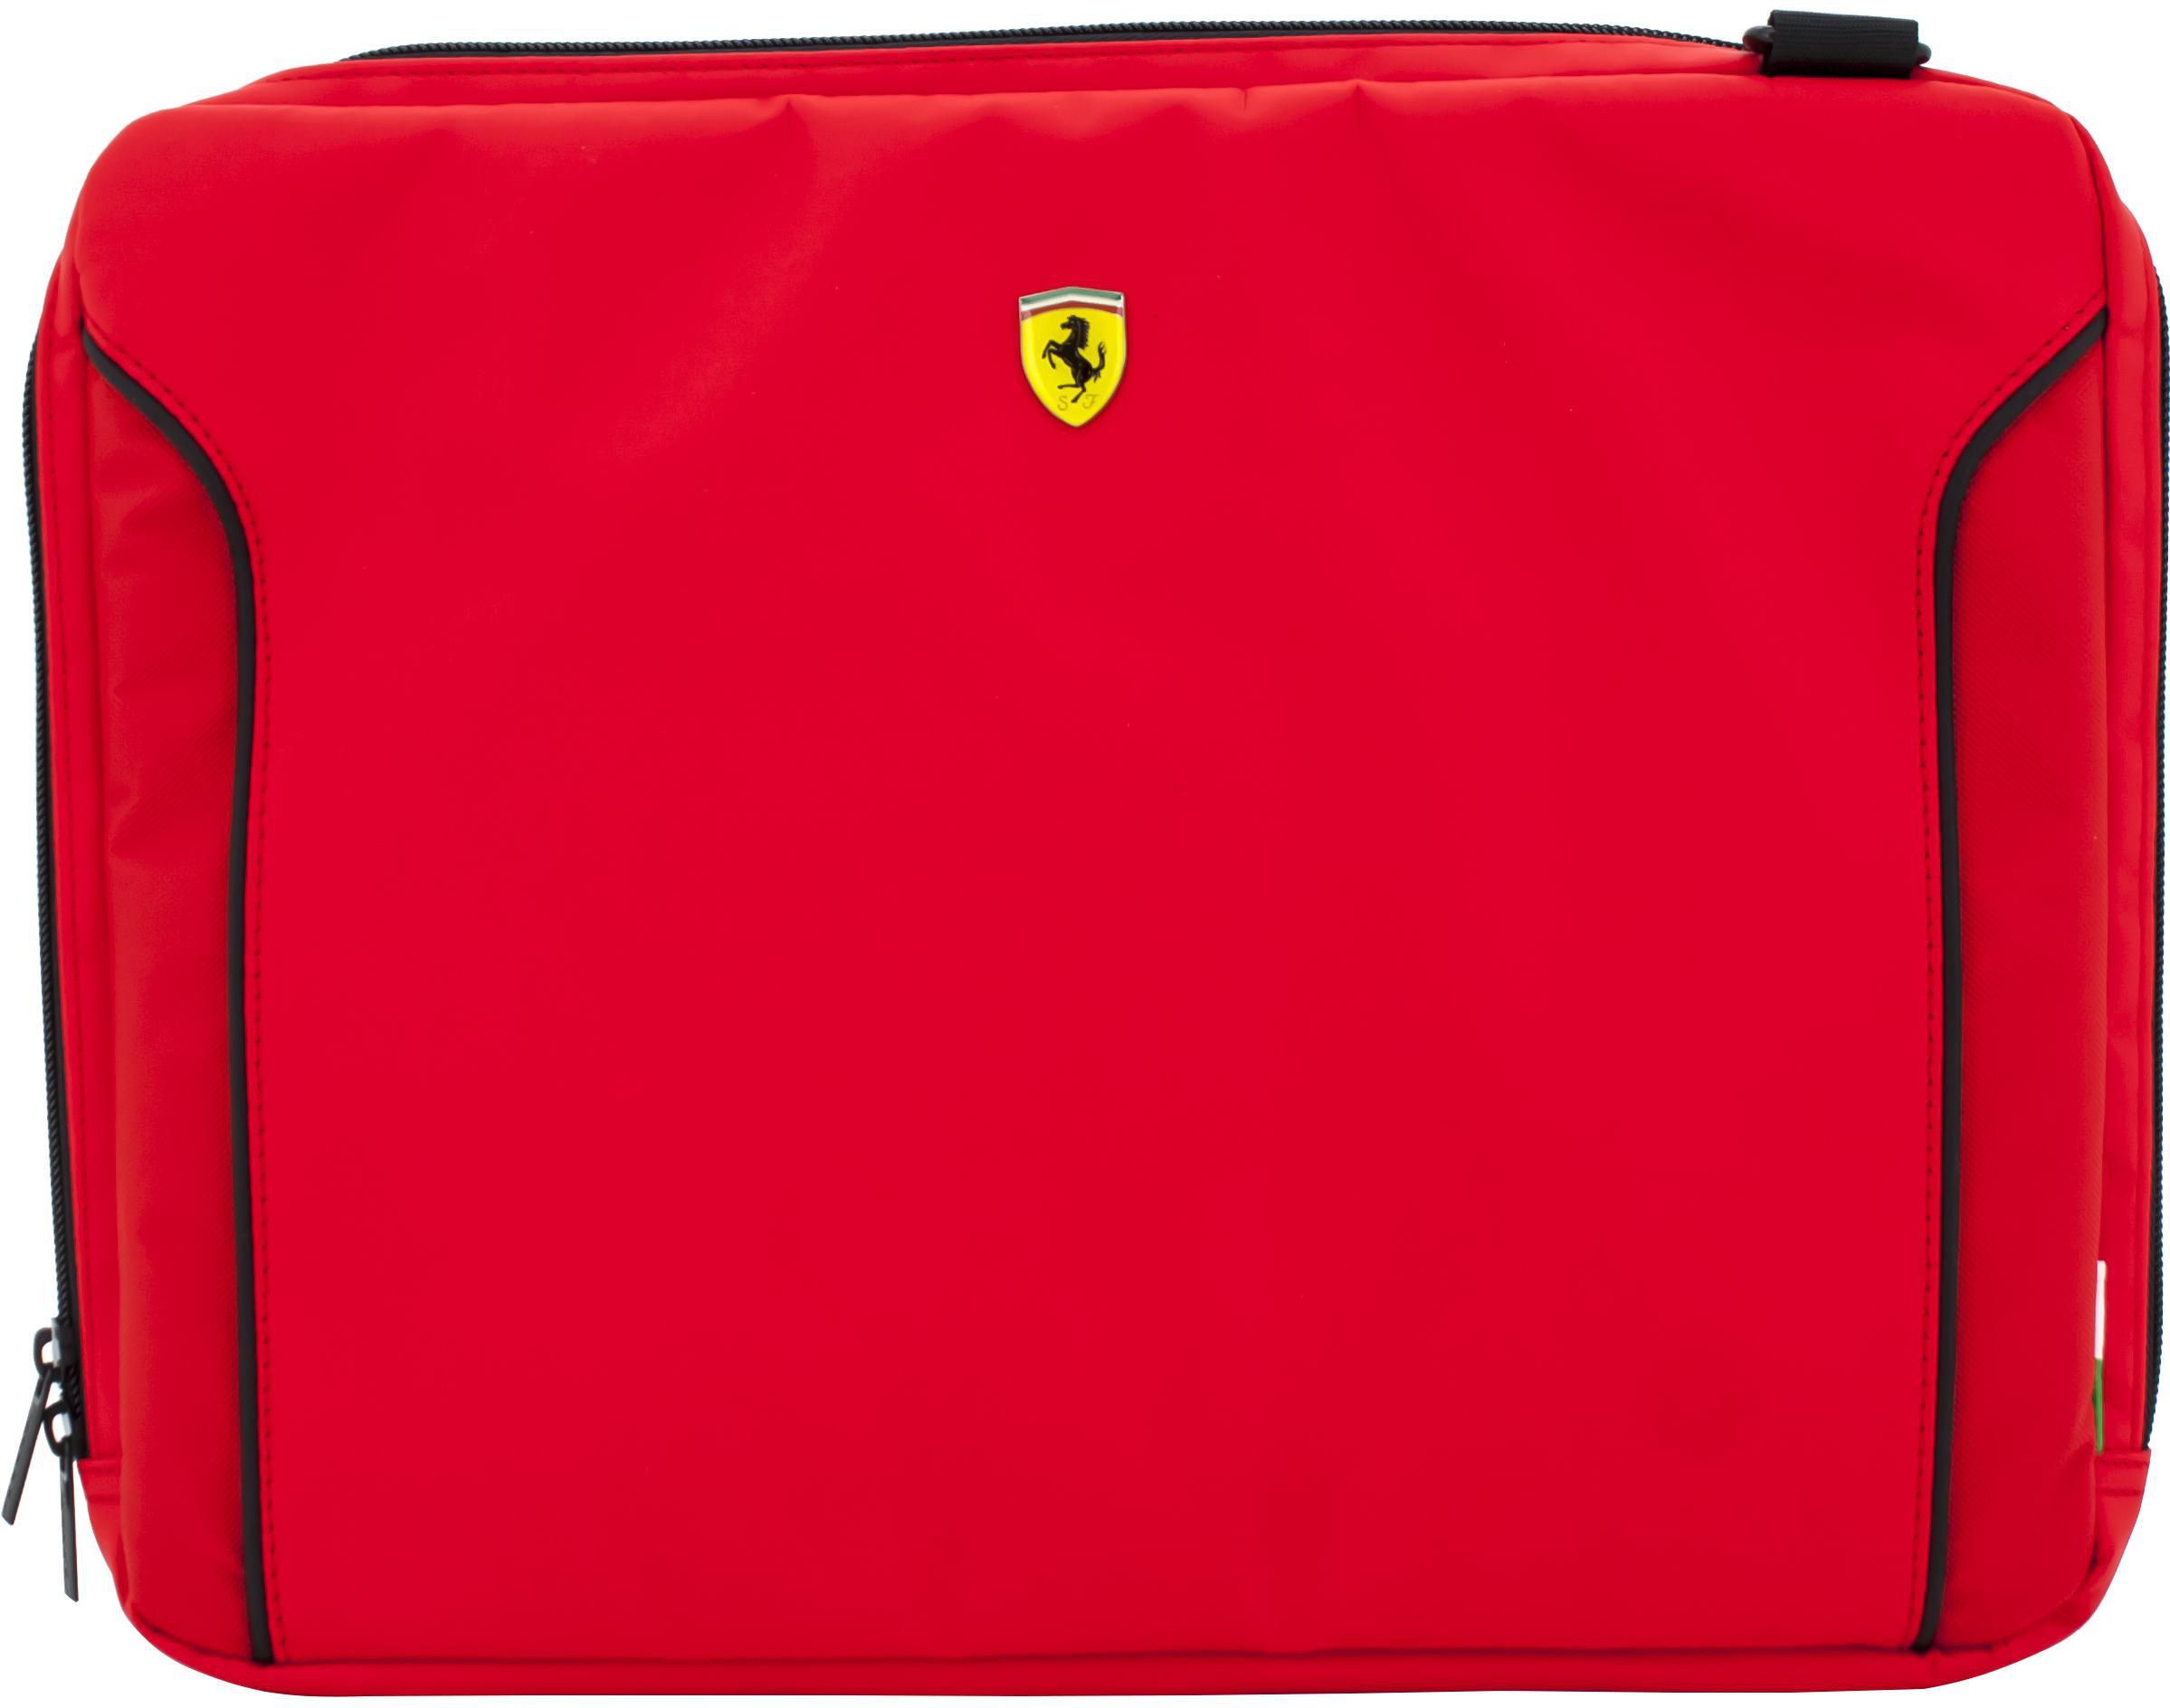 Ferrari Fiorano Laptop Sleeve